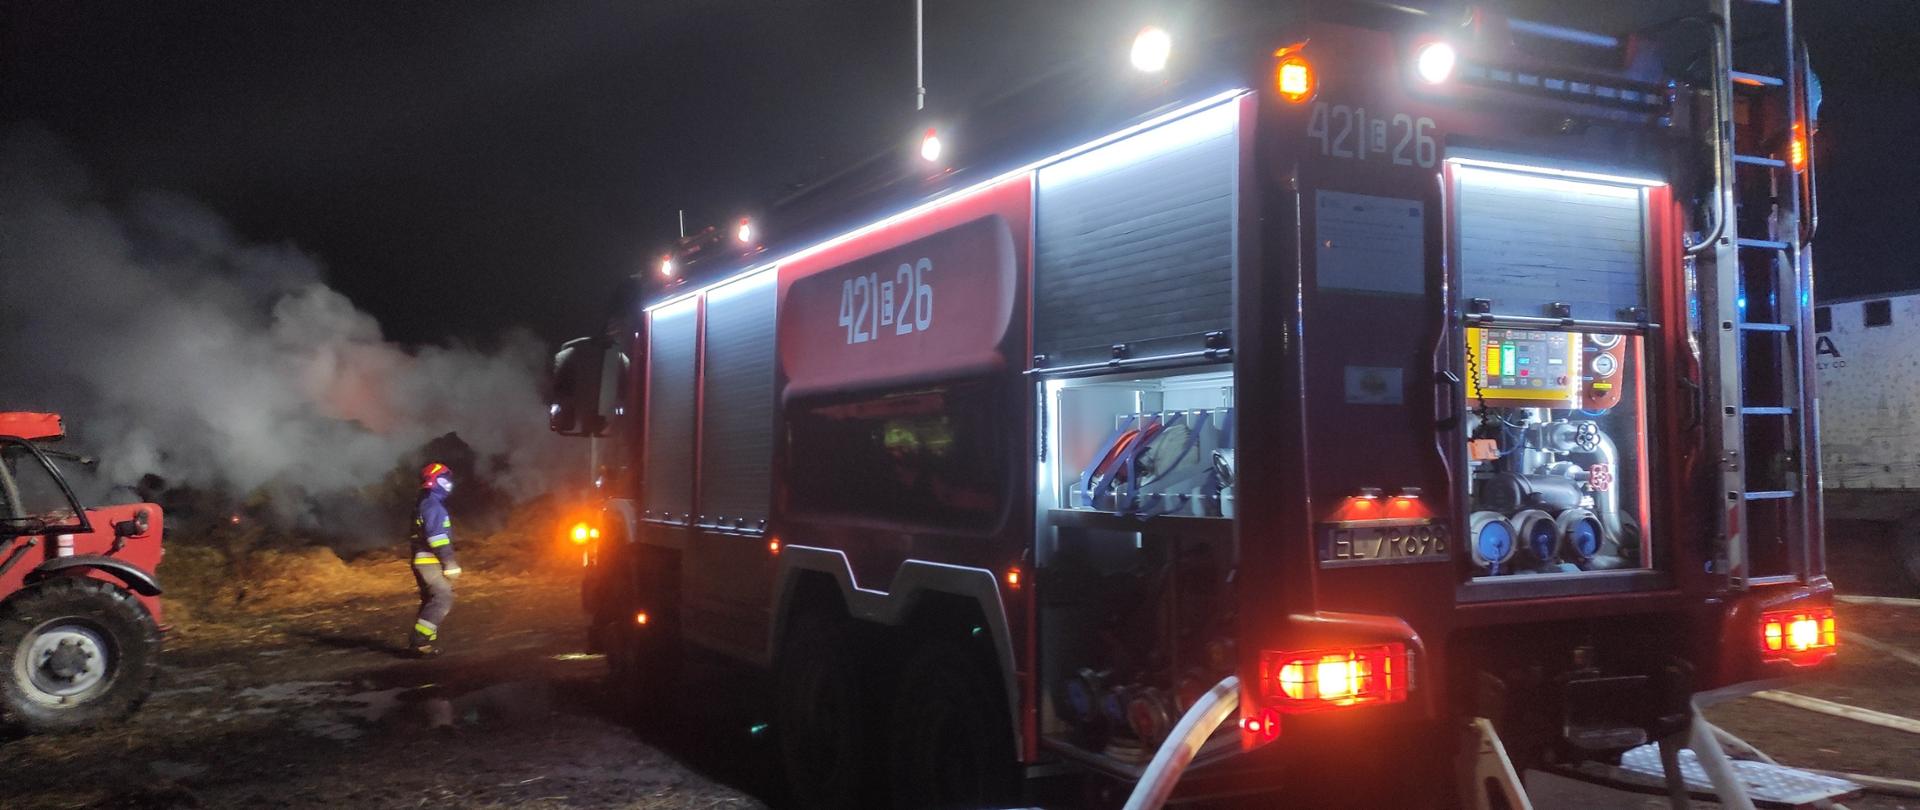 Wóz strażacki w czasie akcji gaśniczej oświetlony dookoła. W tle dym z palących się belek słomy. Na ziemi rozwinięta linia gaśnicza z węży strażackich.